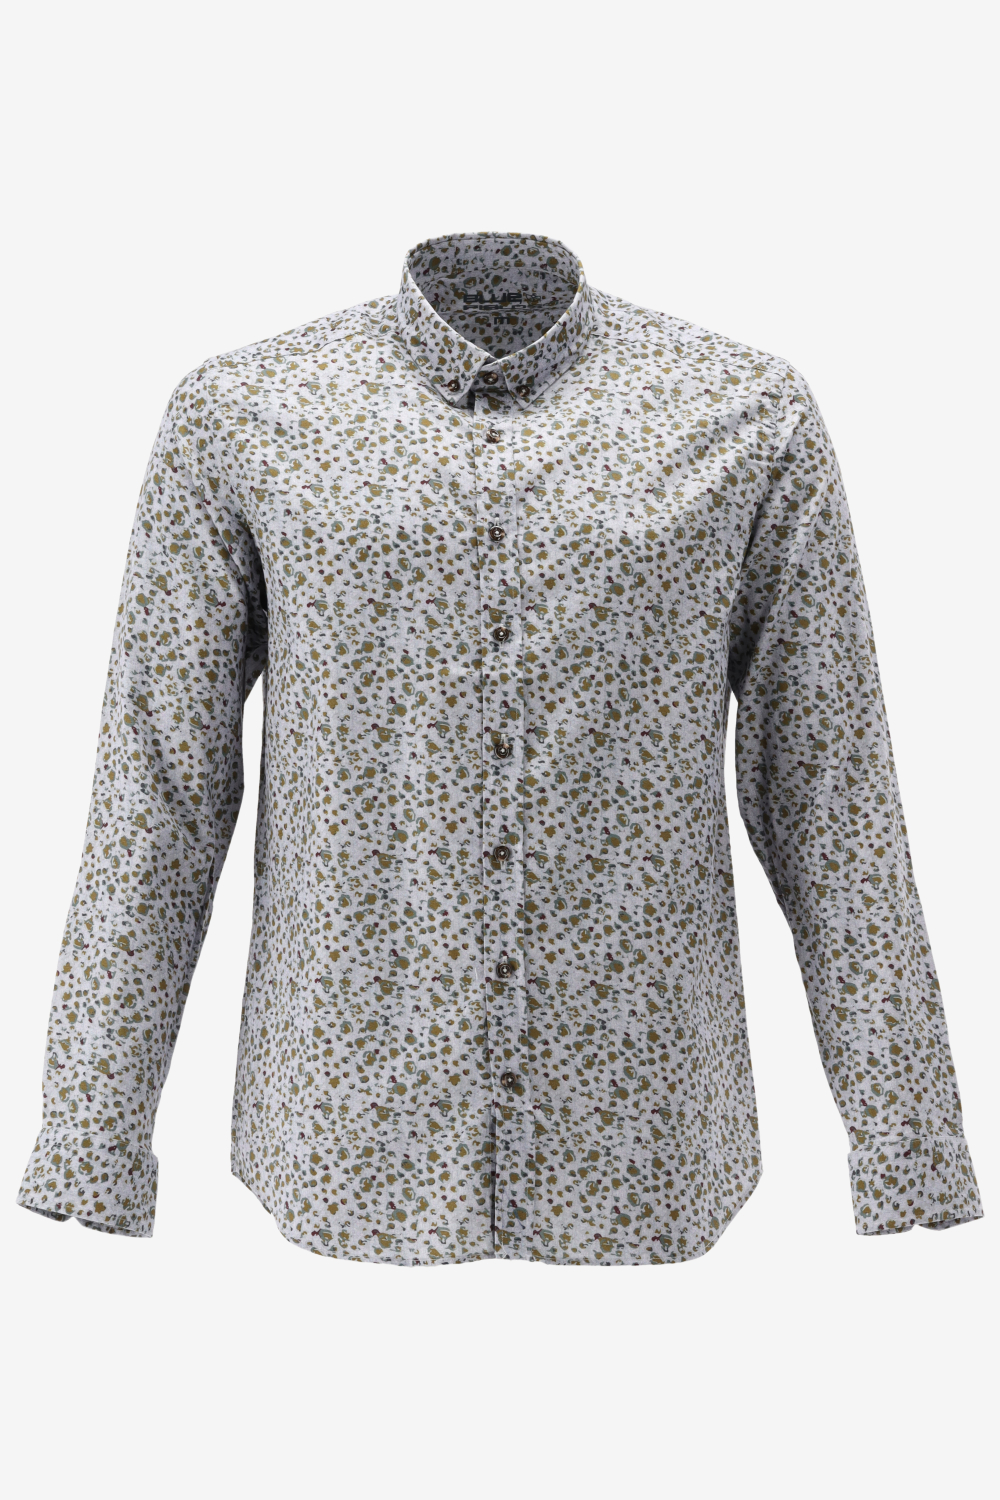 BlueFields Overhemd Overhemd Van Katoen Met Print 21442008 1883 Mannen Maat - 3XL